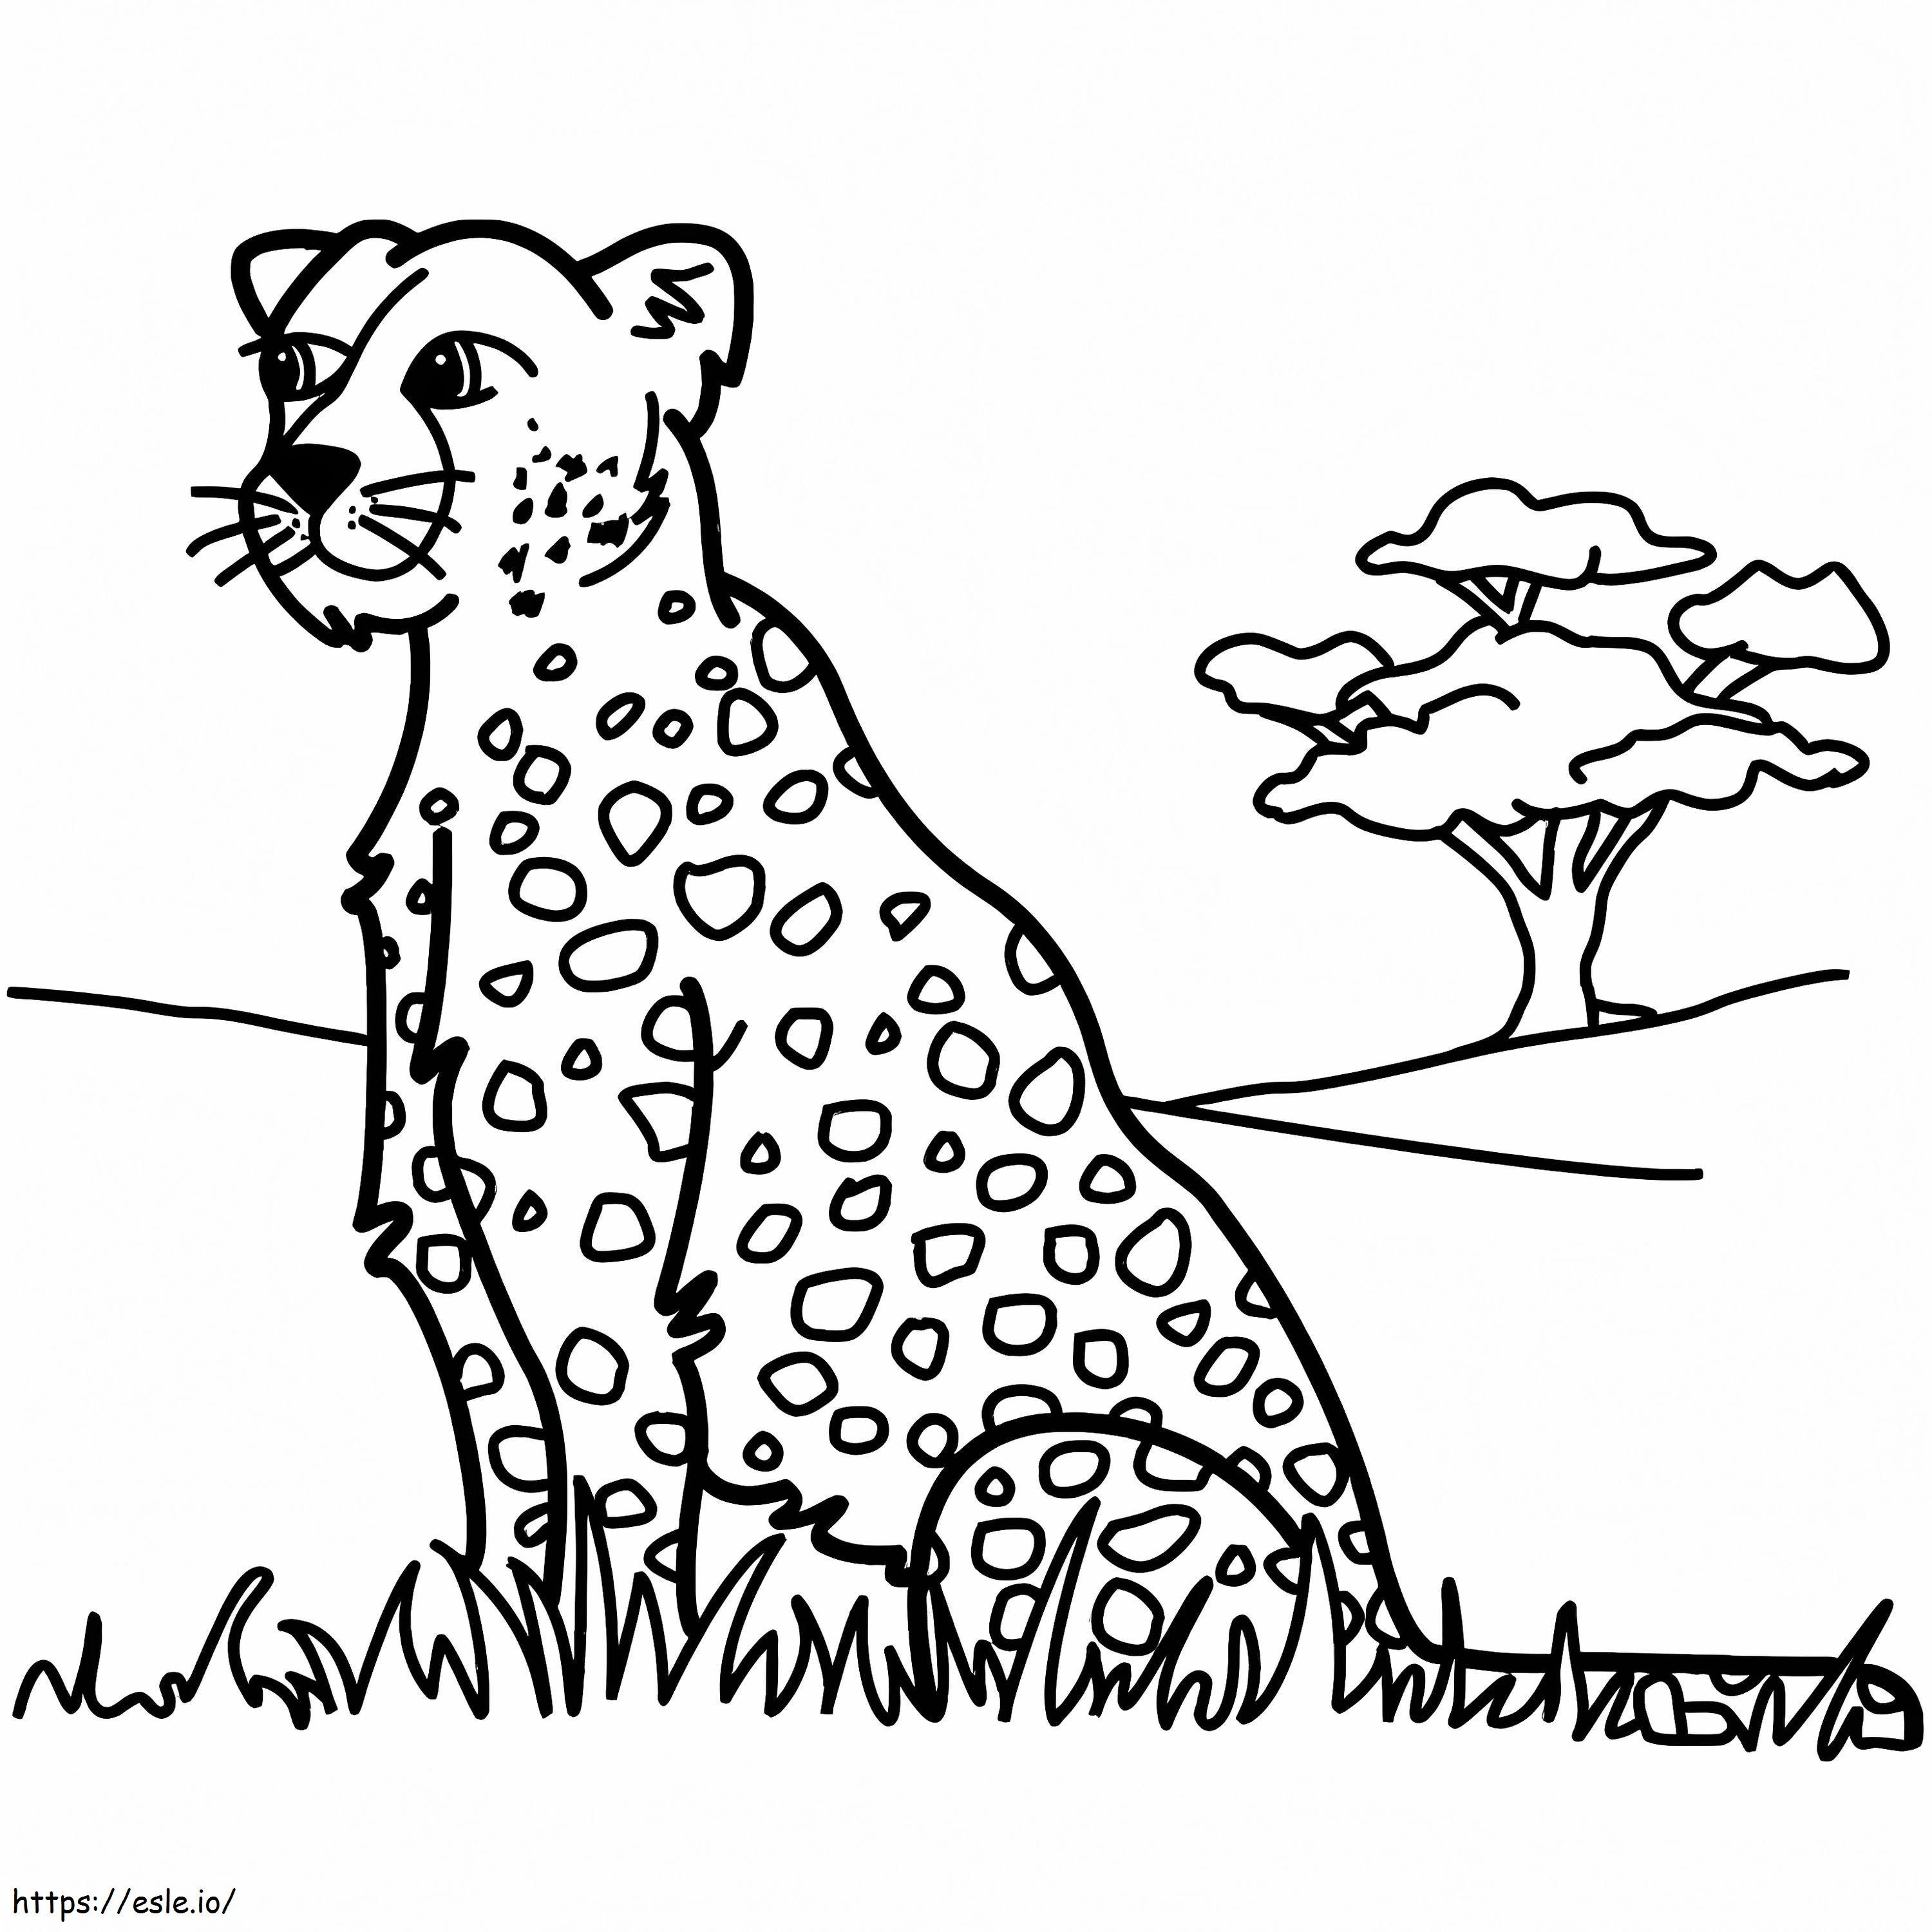 Asistente de leopardo para colorear